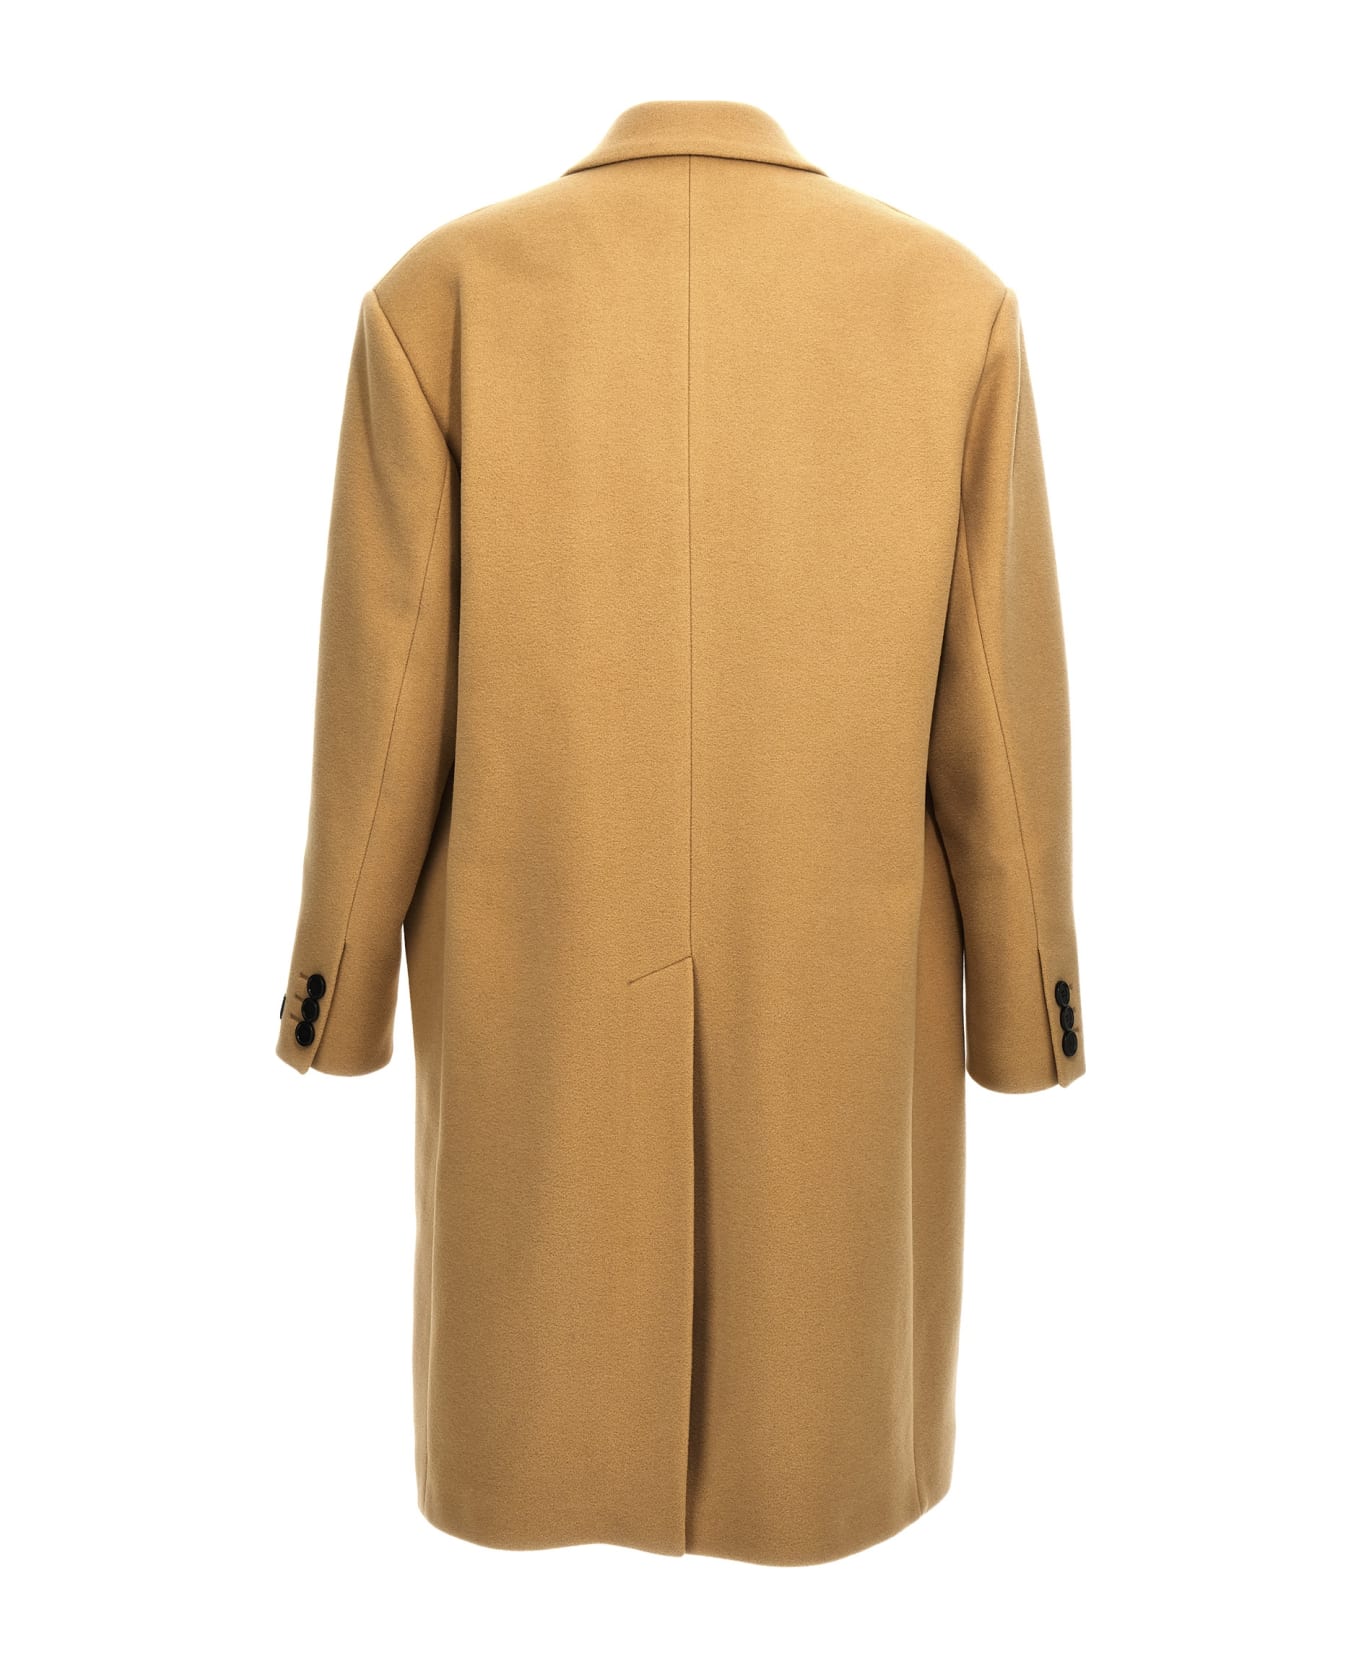 Marni Single-breasted Wool Coat - Beige